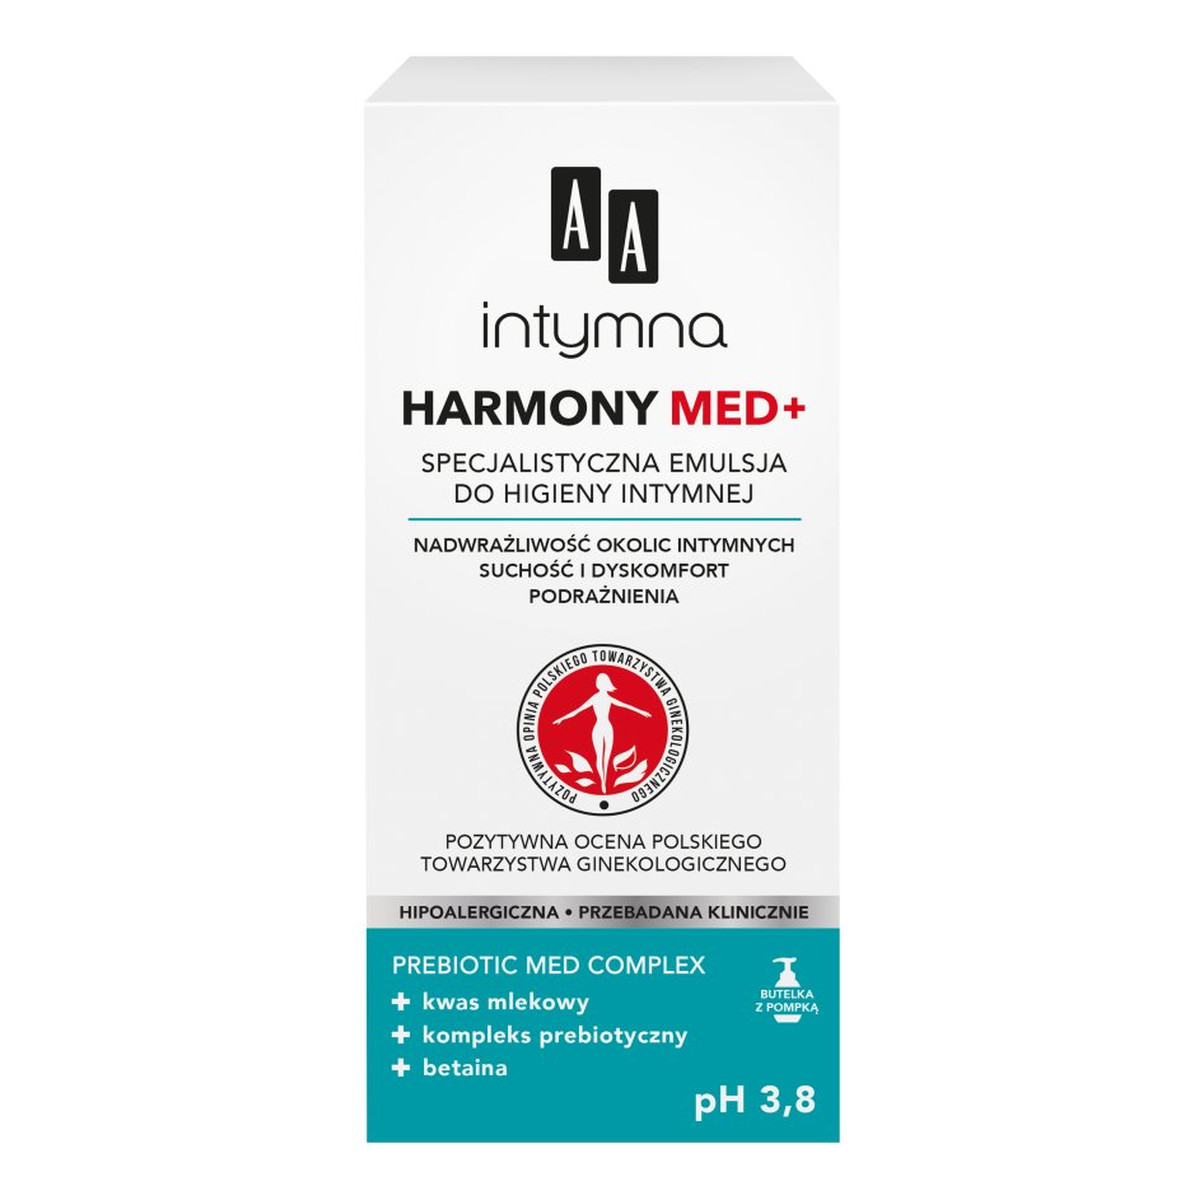 AA Intymna Harmony Med+ Specjalistyczna Emulsja do higieny intymnej 300ml